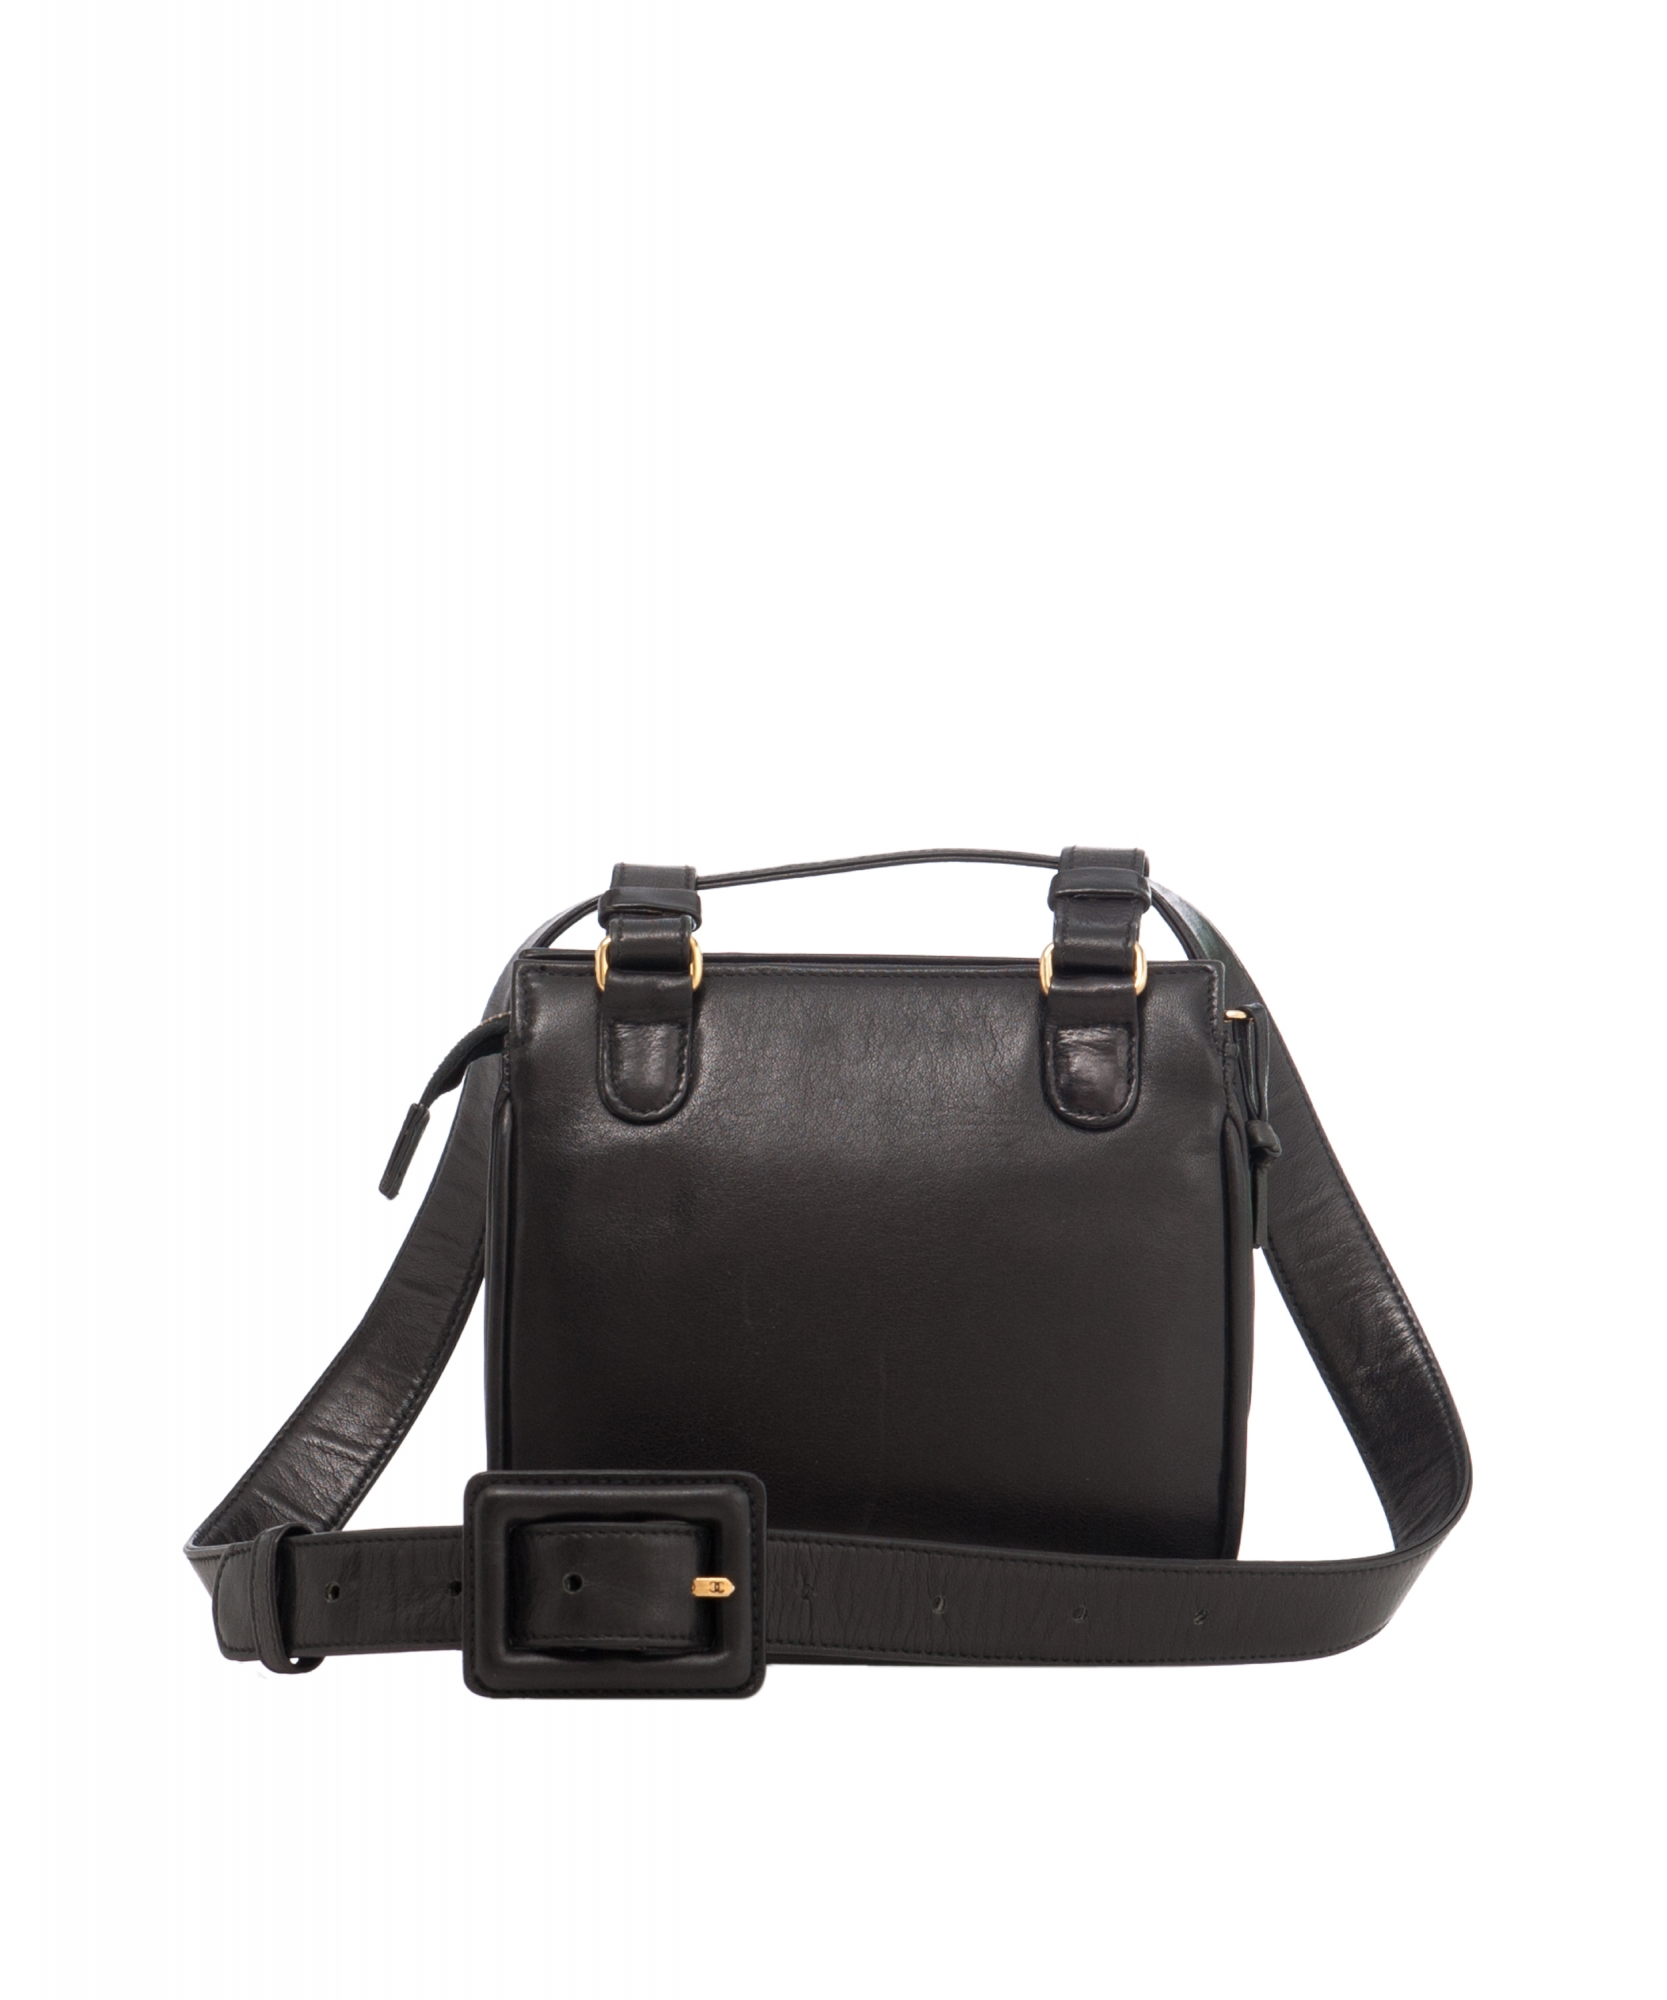 Chanel 'Fanny Pack' in Black Leather - Chanel | La Doyenne